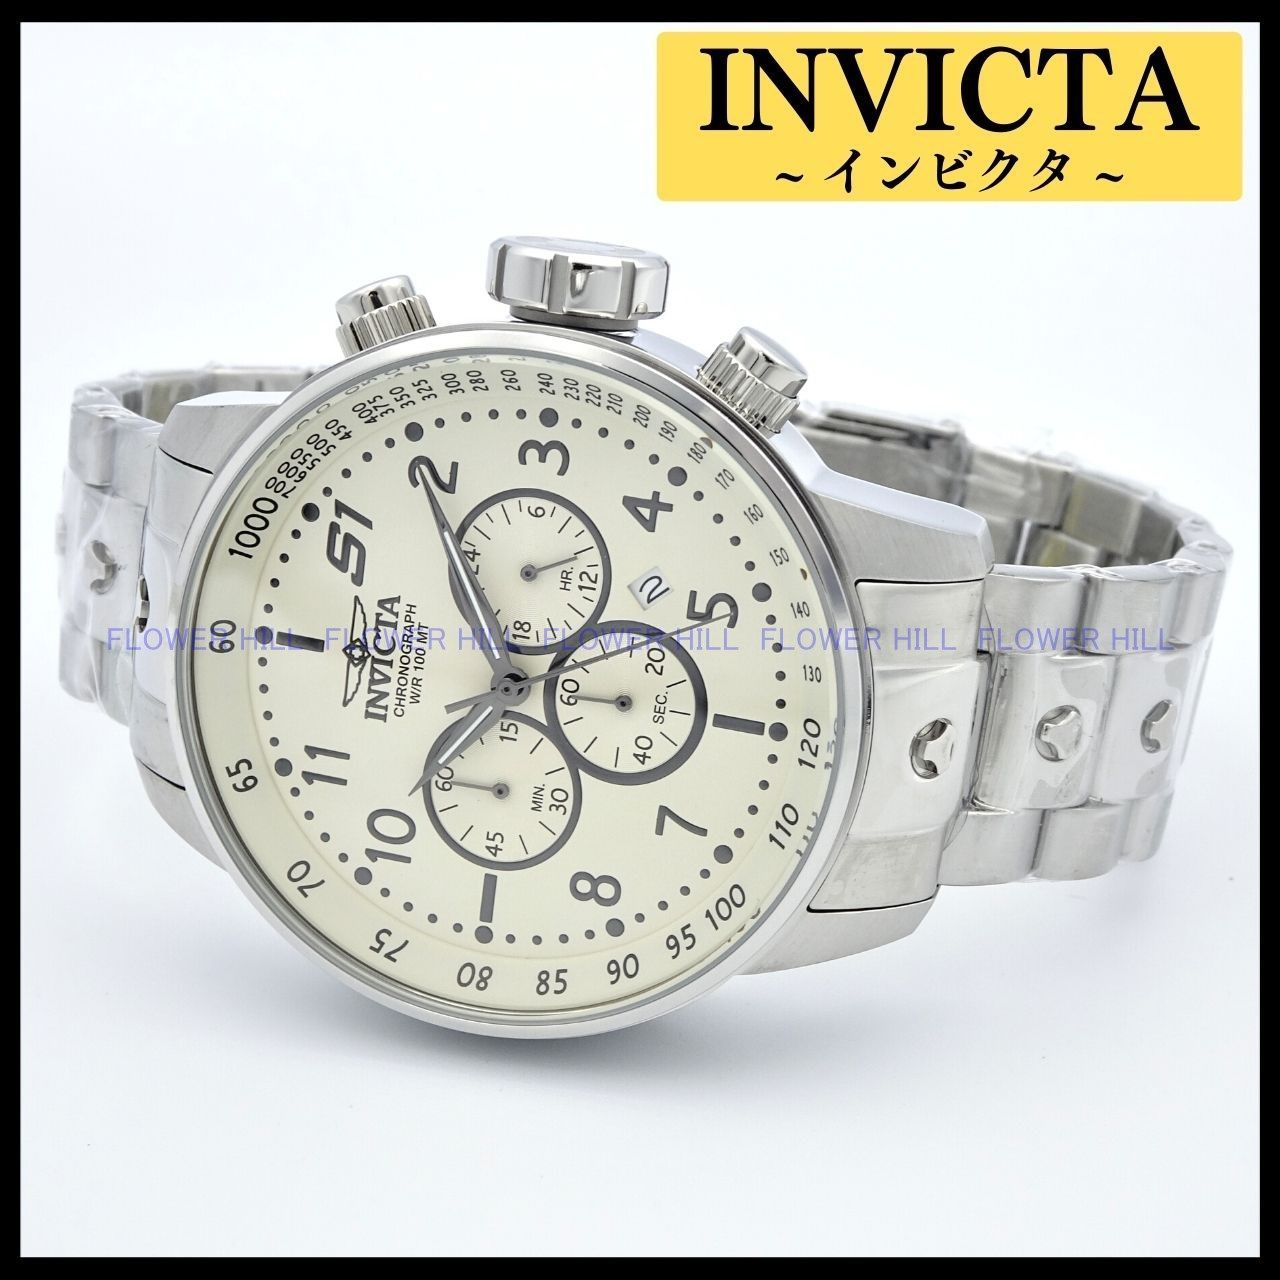 INVICTA インビクタ 腕時計 メンズ S1 RALLY 23077 クォーツ メタル